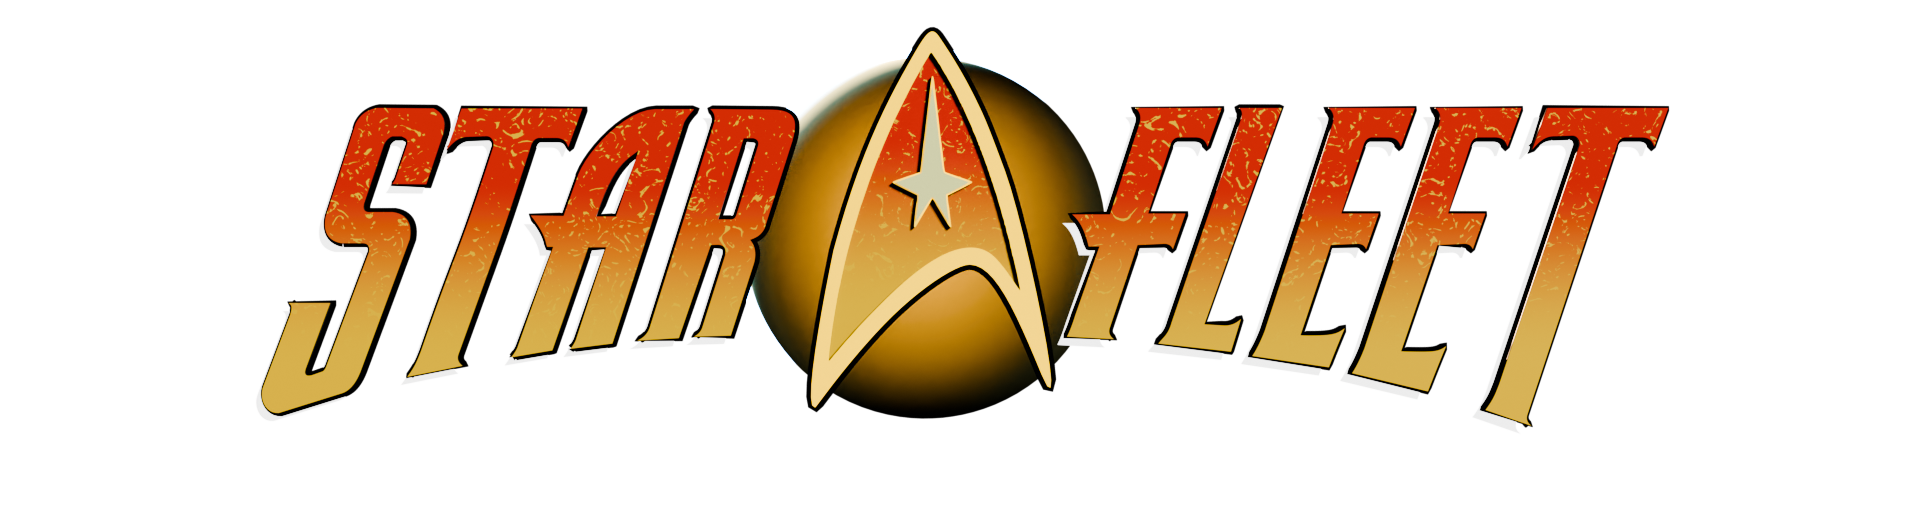 Starfleet header logo